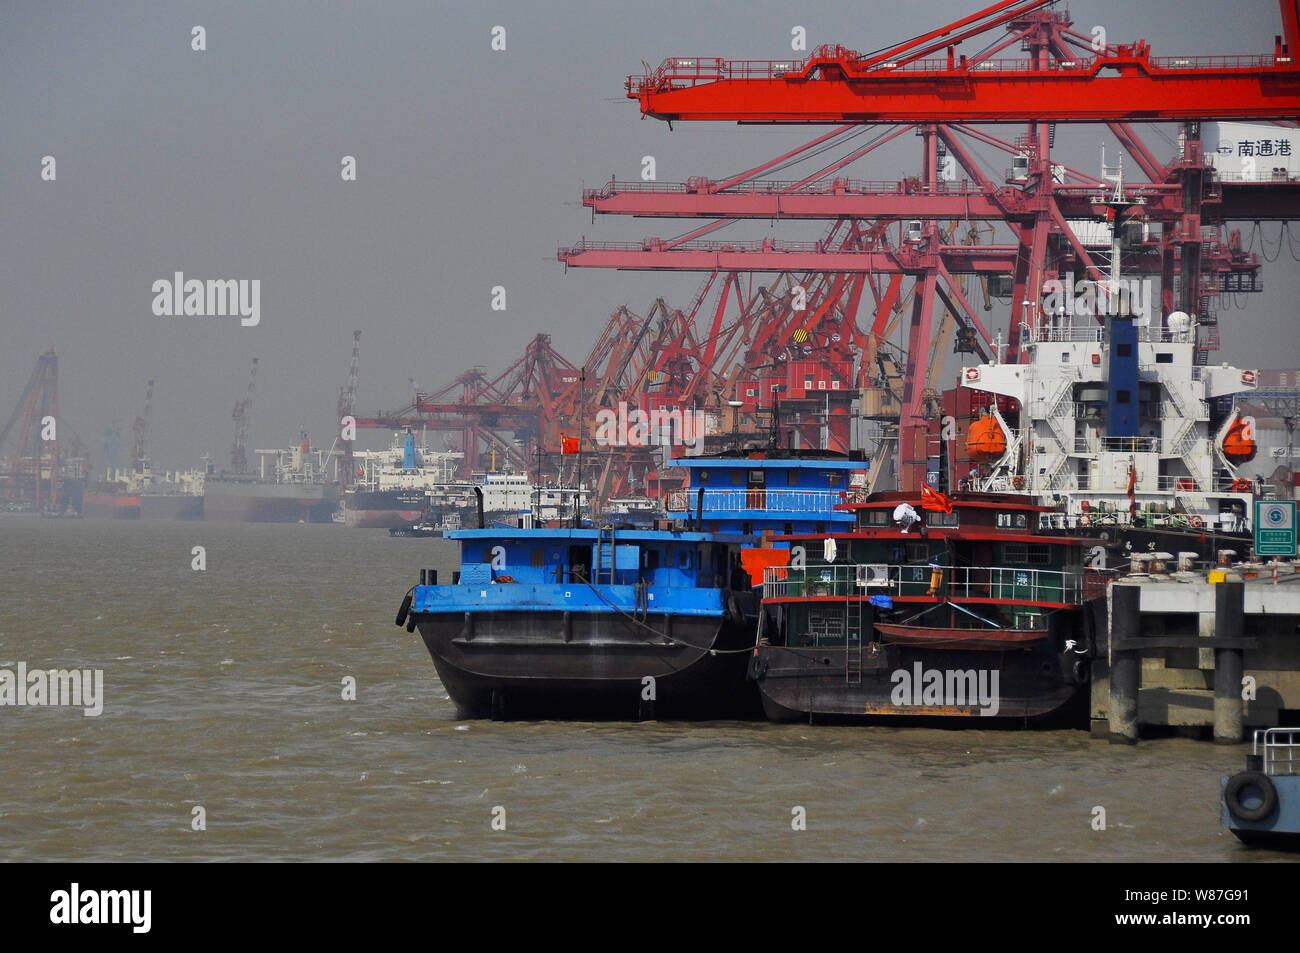 Container ships/boats at the Yangtse river quayside Nantong China Stock Photo